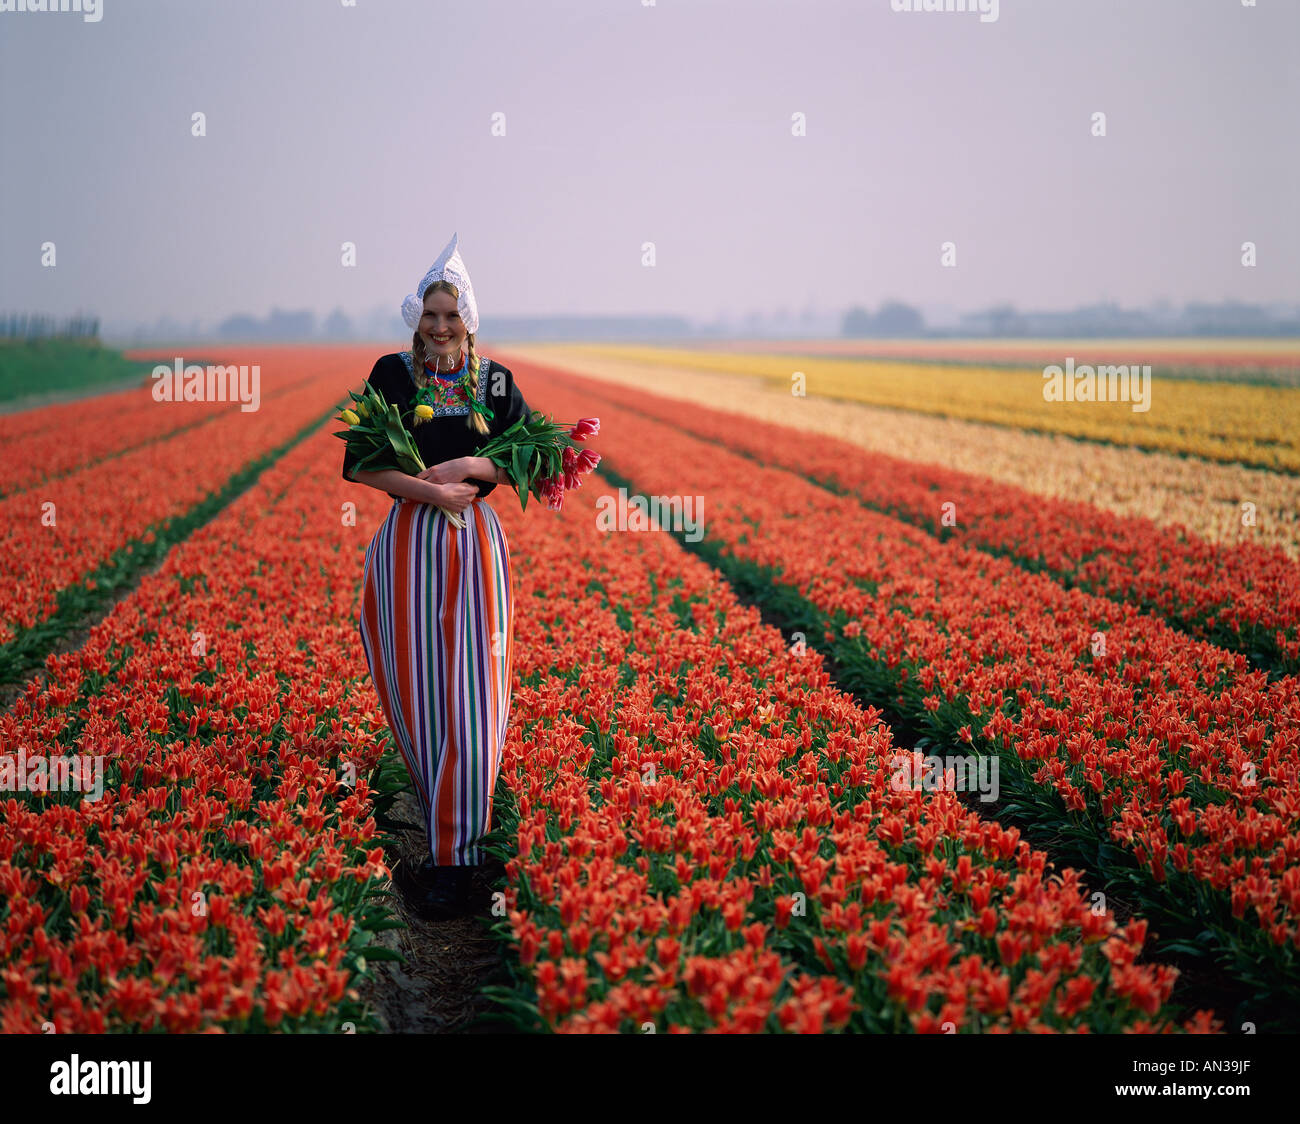 Campi di Tulipani / ragazza vestita in Costume olandese in campi di tulipani Lisse, Olanda (Paesi Bassi) Foto Stock